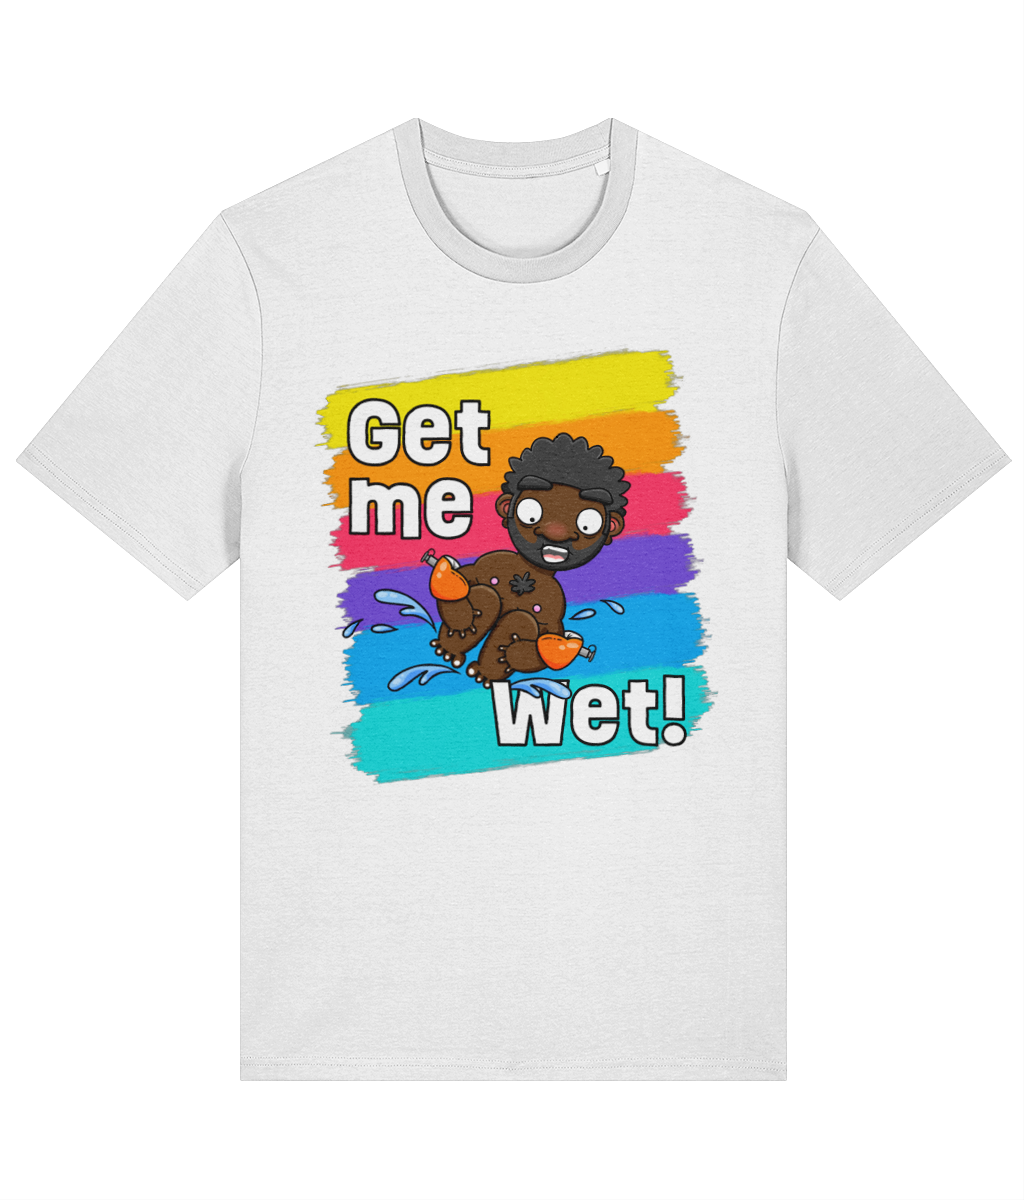 Get me Wet! T-shirt